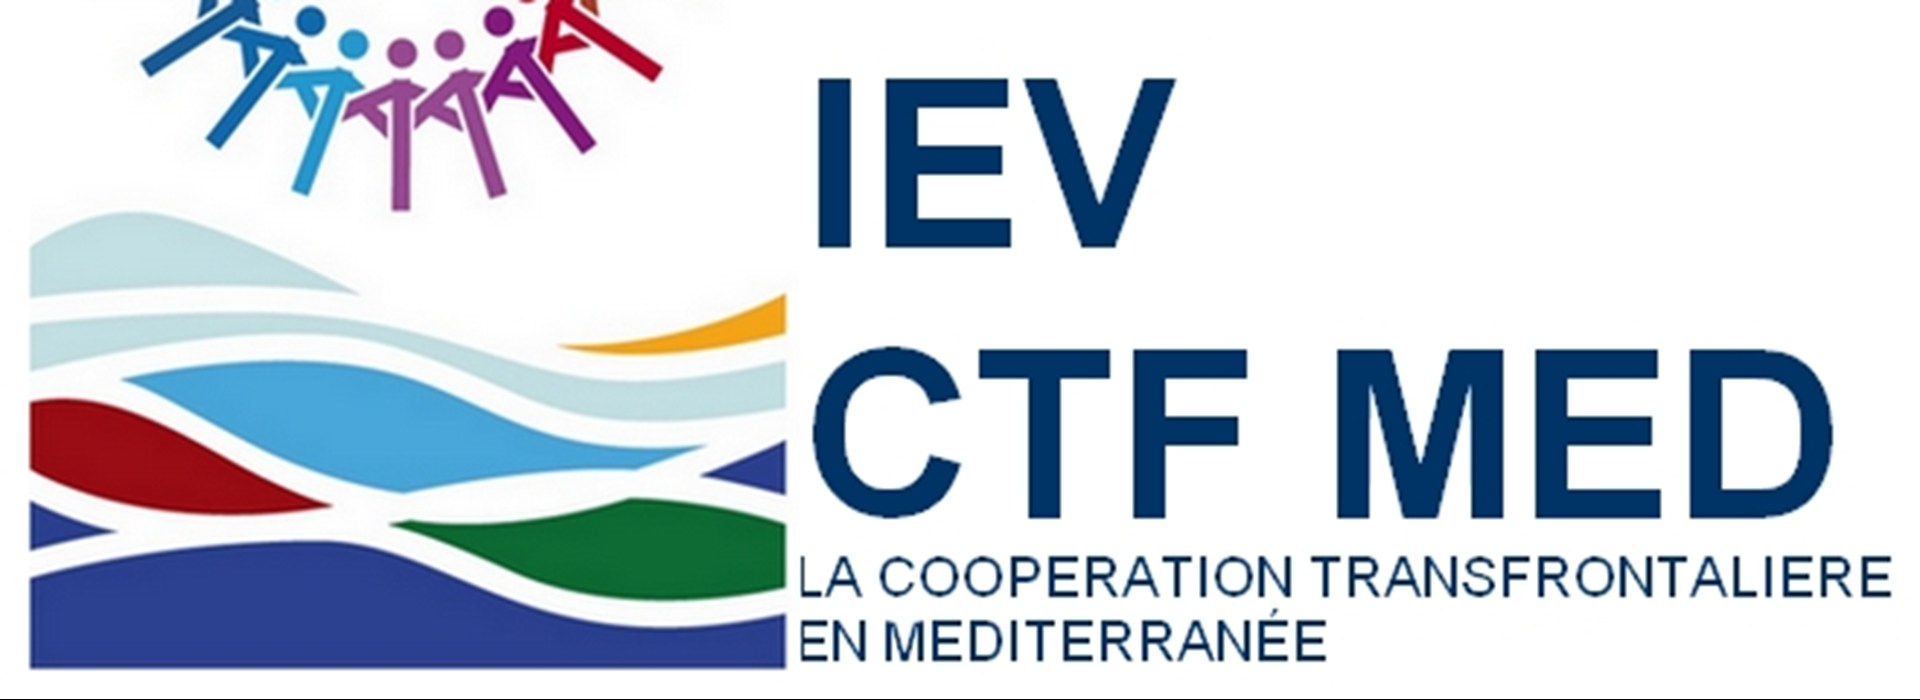 Appel à Projets de Capitalisation : Programme de Coopération transfrontalière Bassin méditerranéenne IEV CTF MED